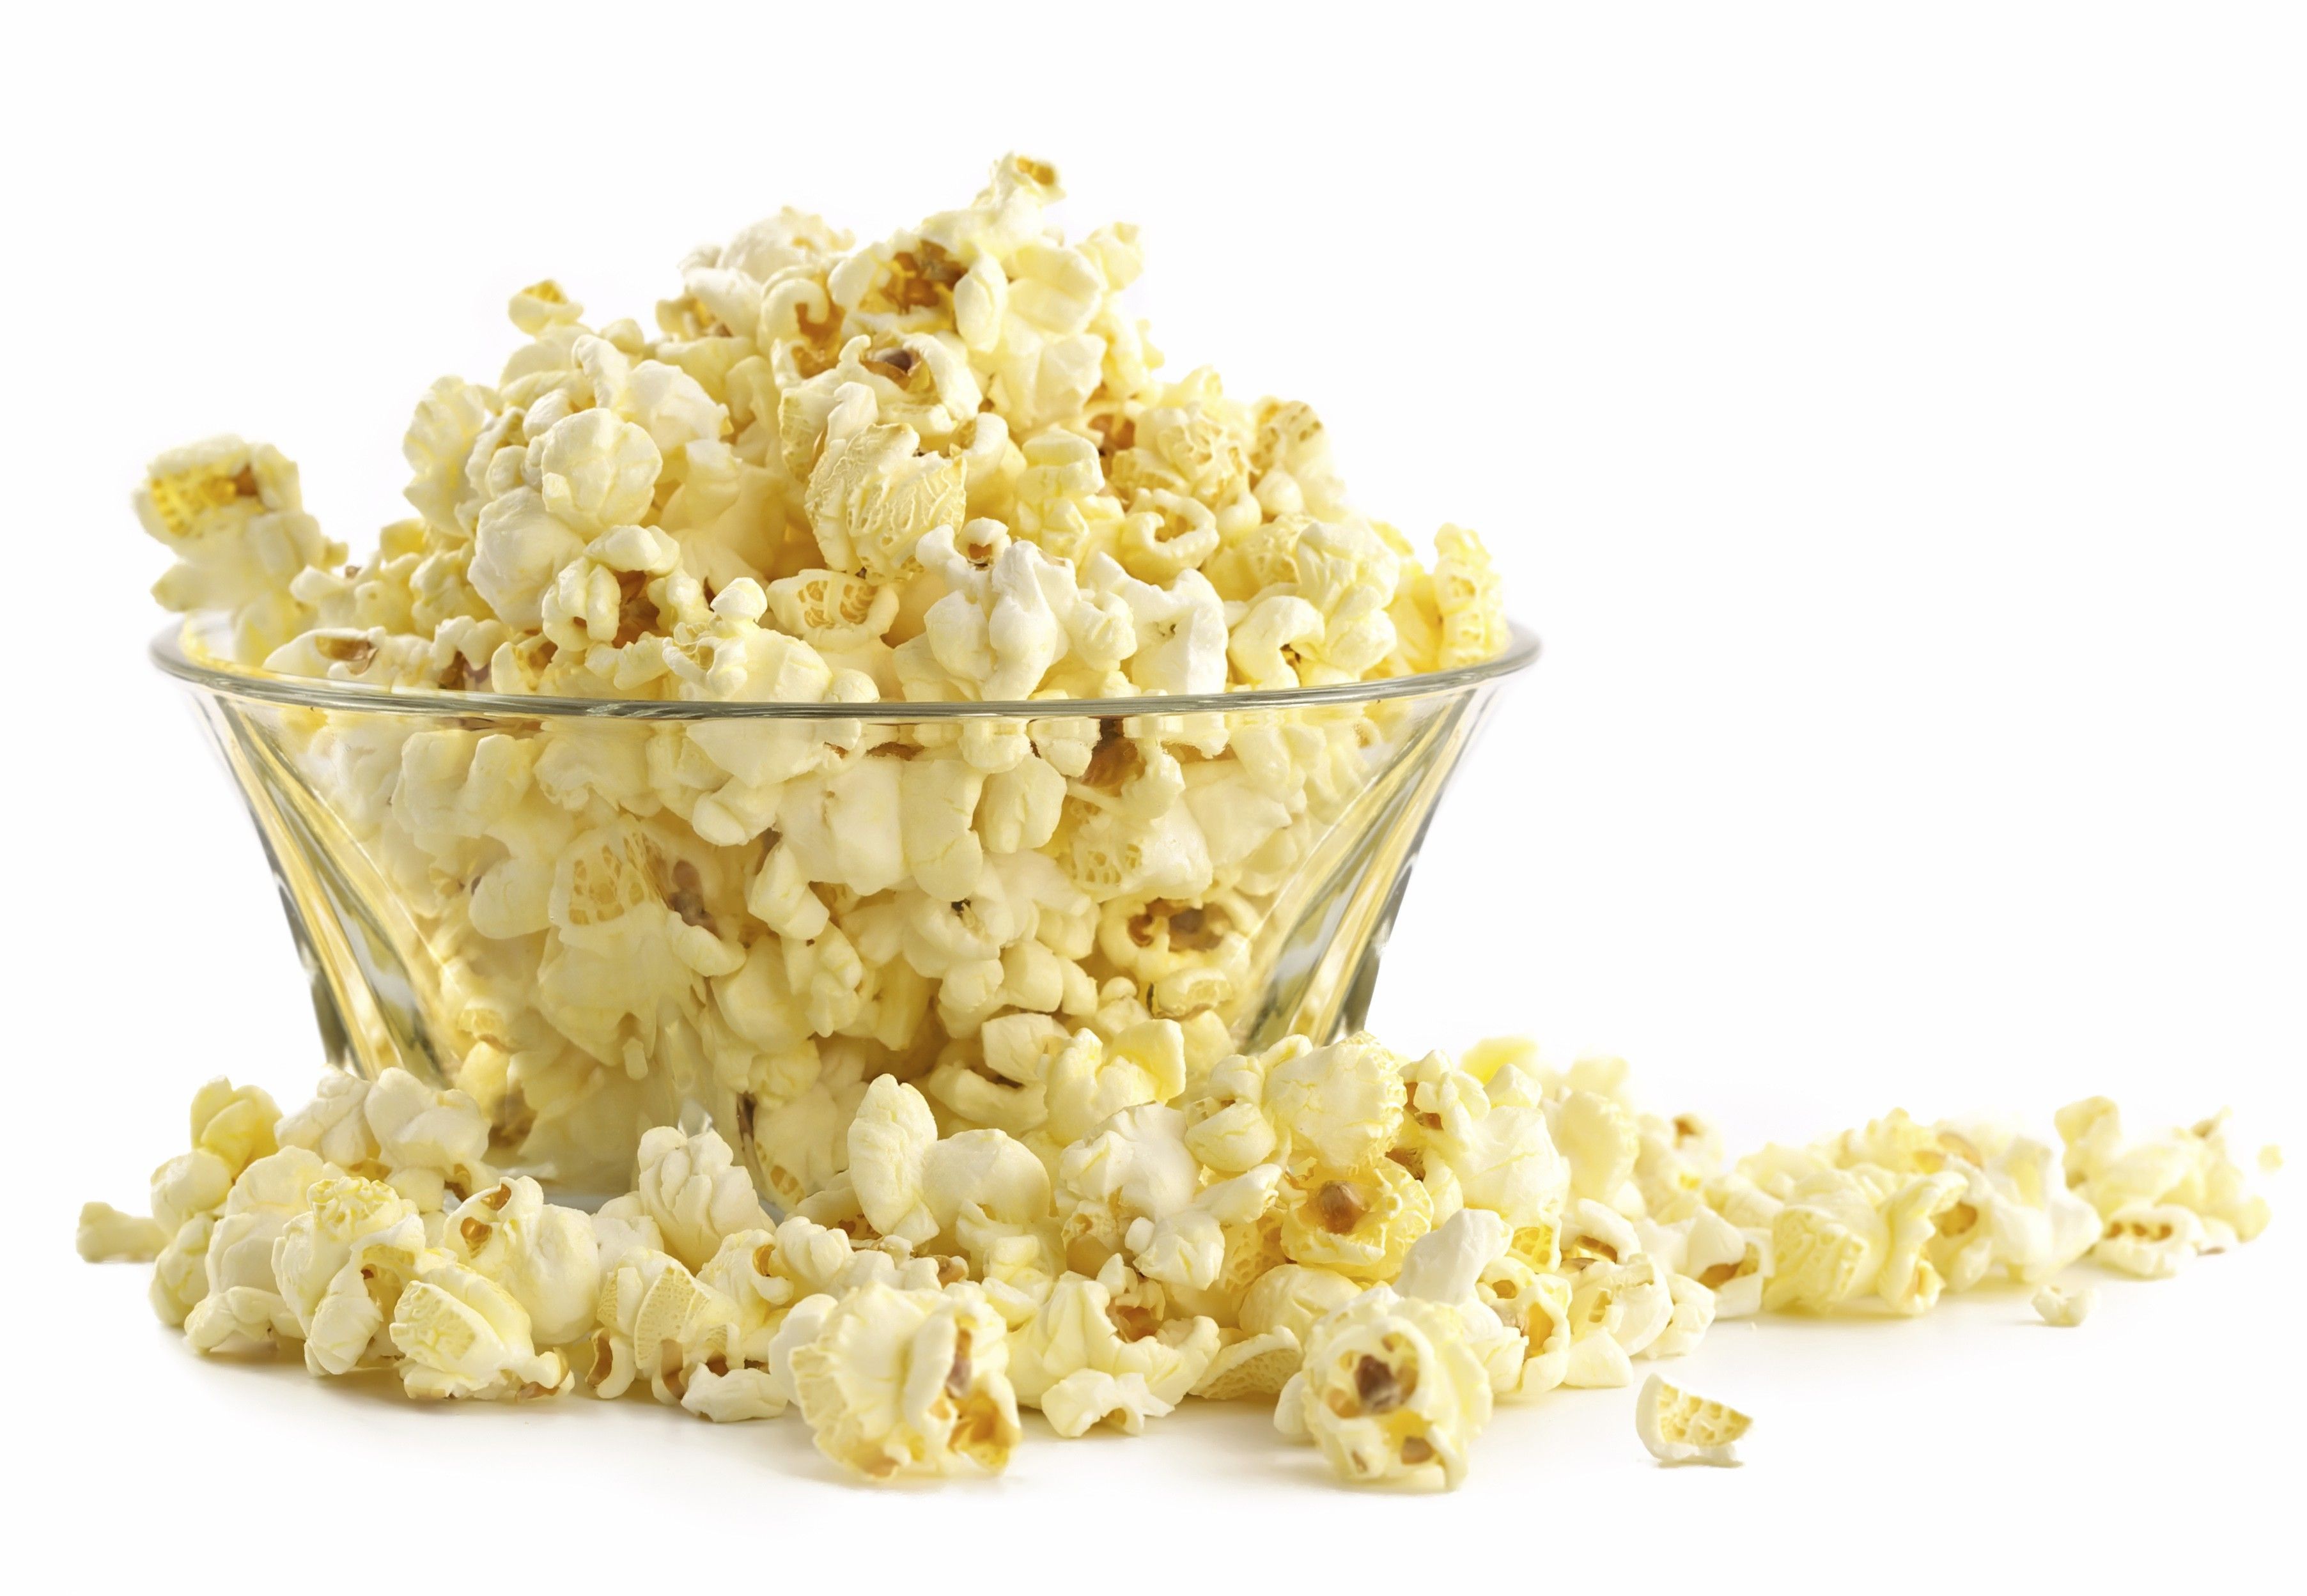 A bowl of popcorn on a white background - Popcorn